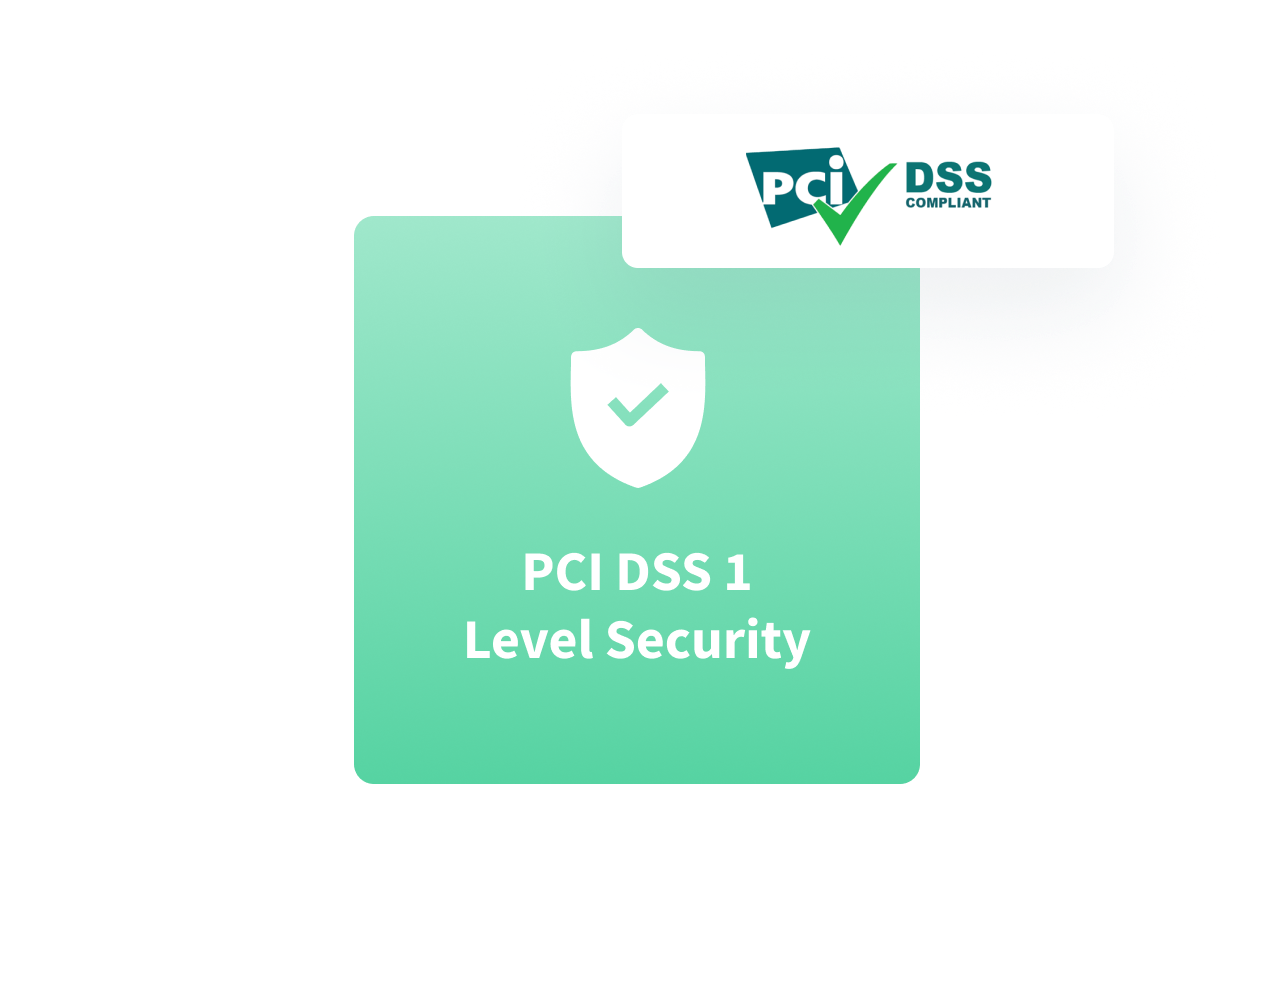 Sicherheit gemäß PCI DSS Level 1